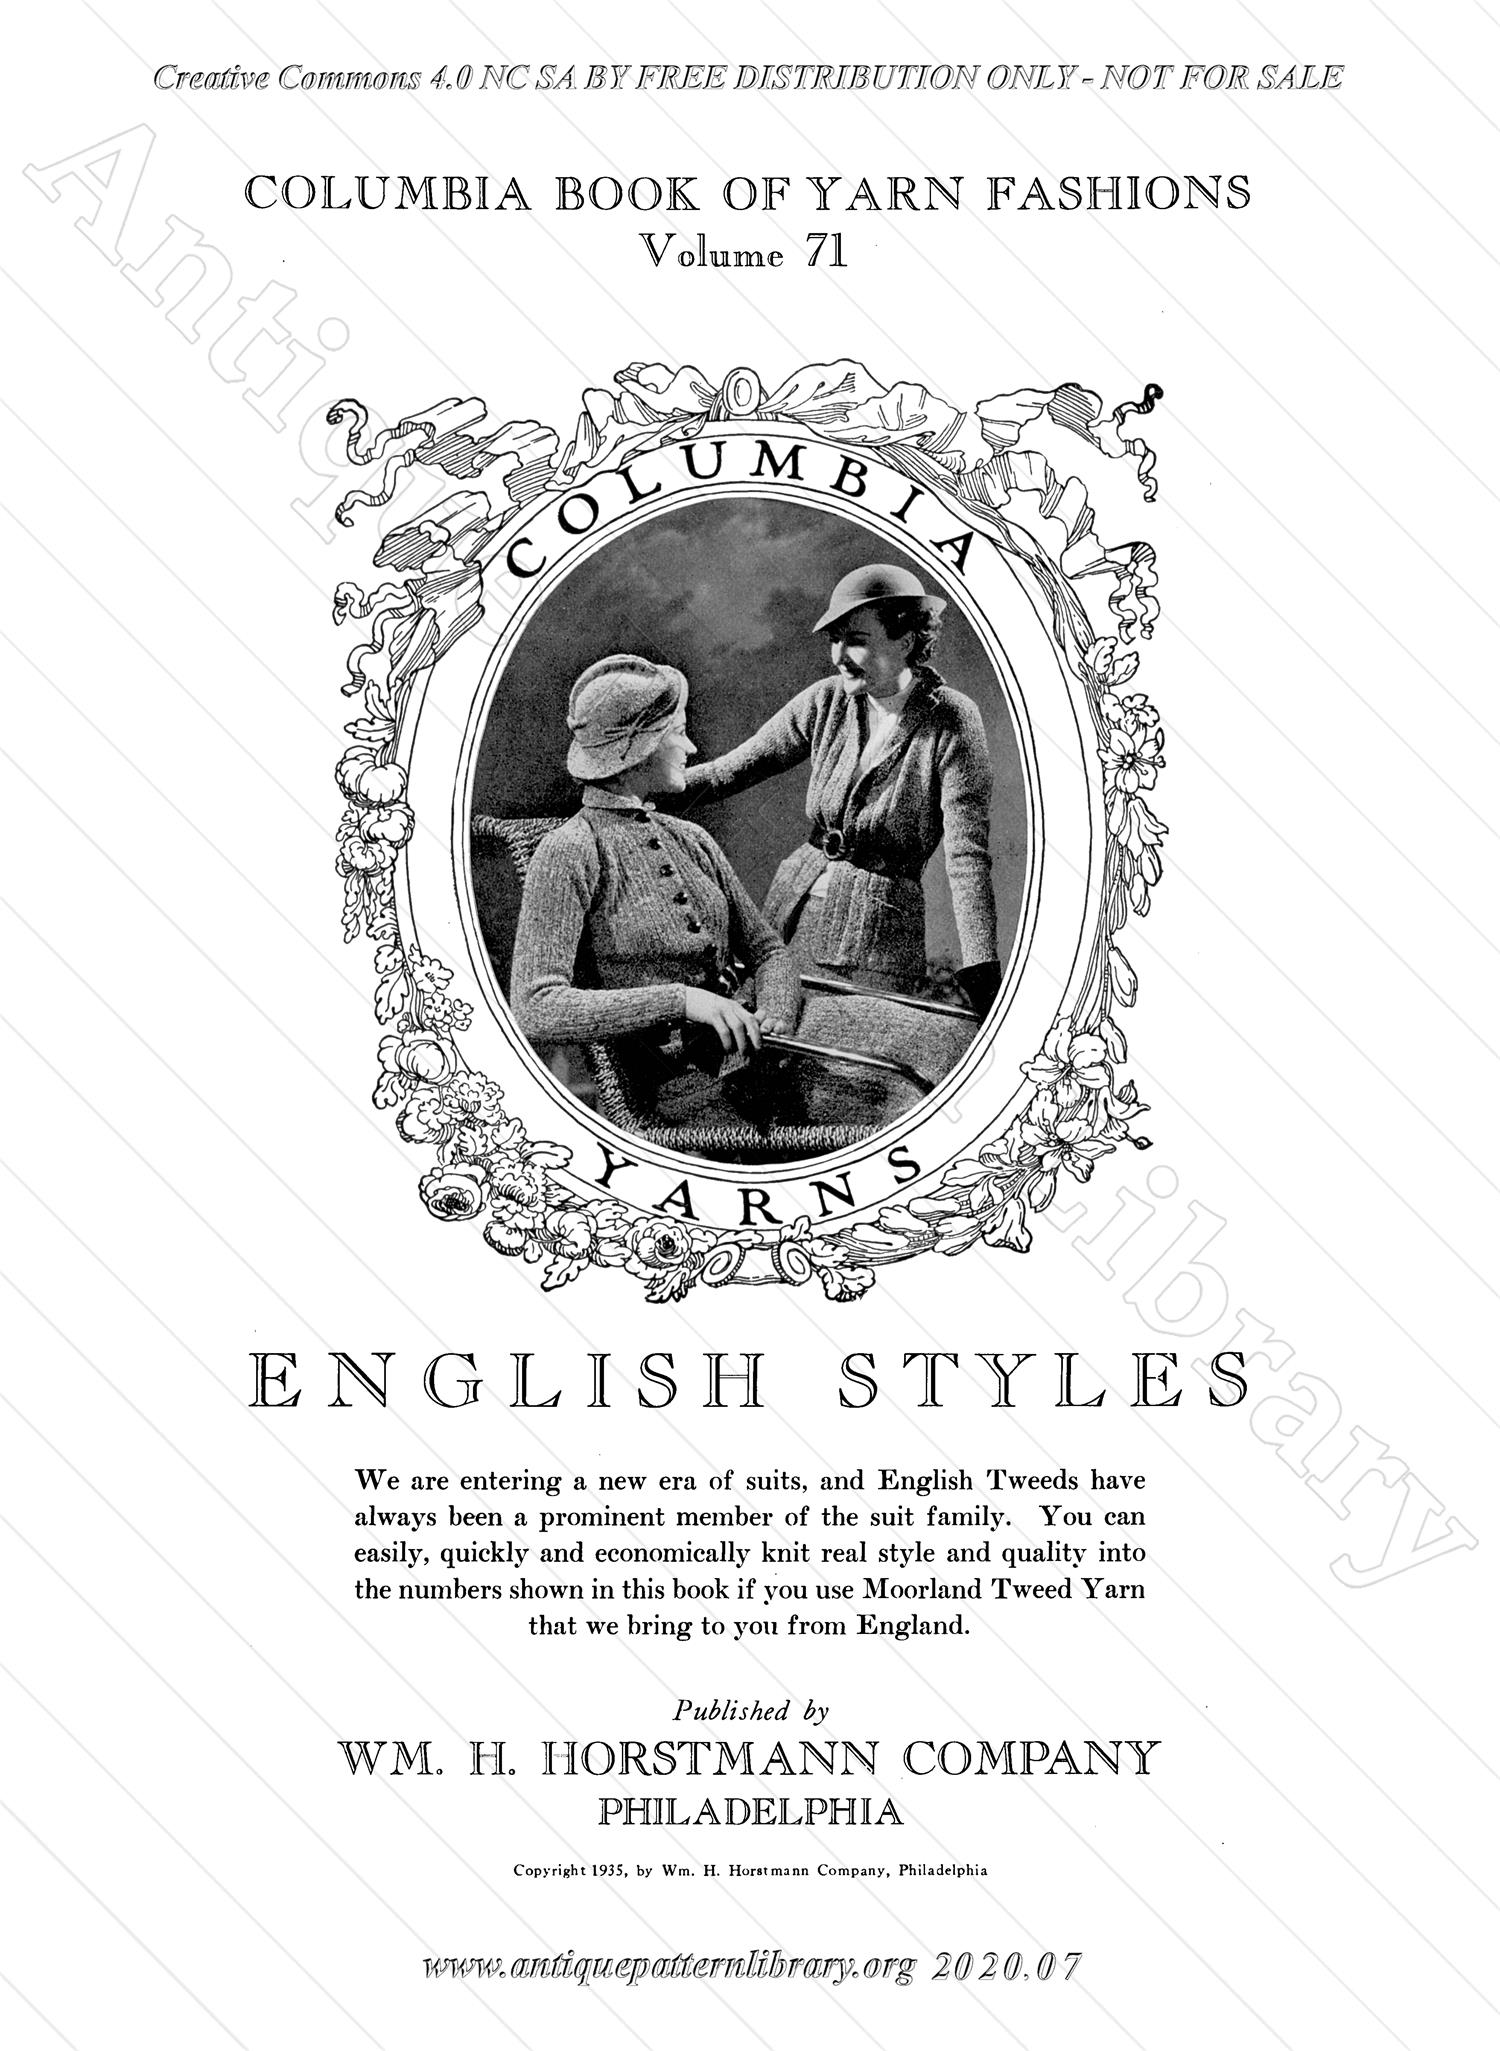 J-PA236 English Styles